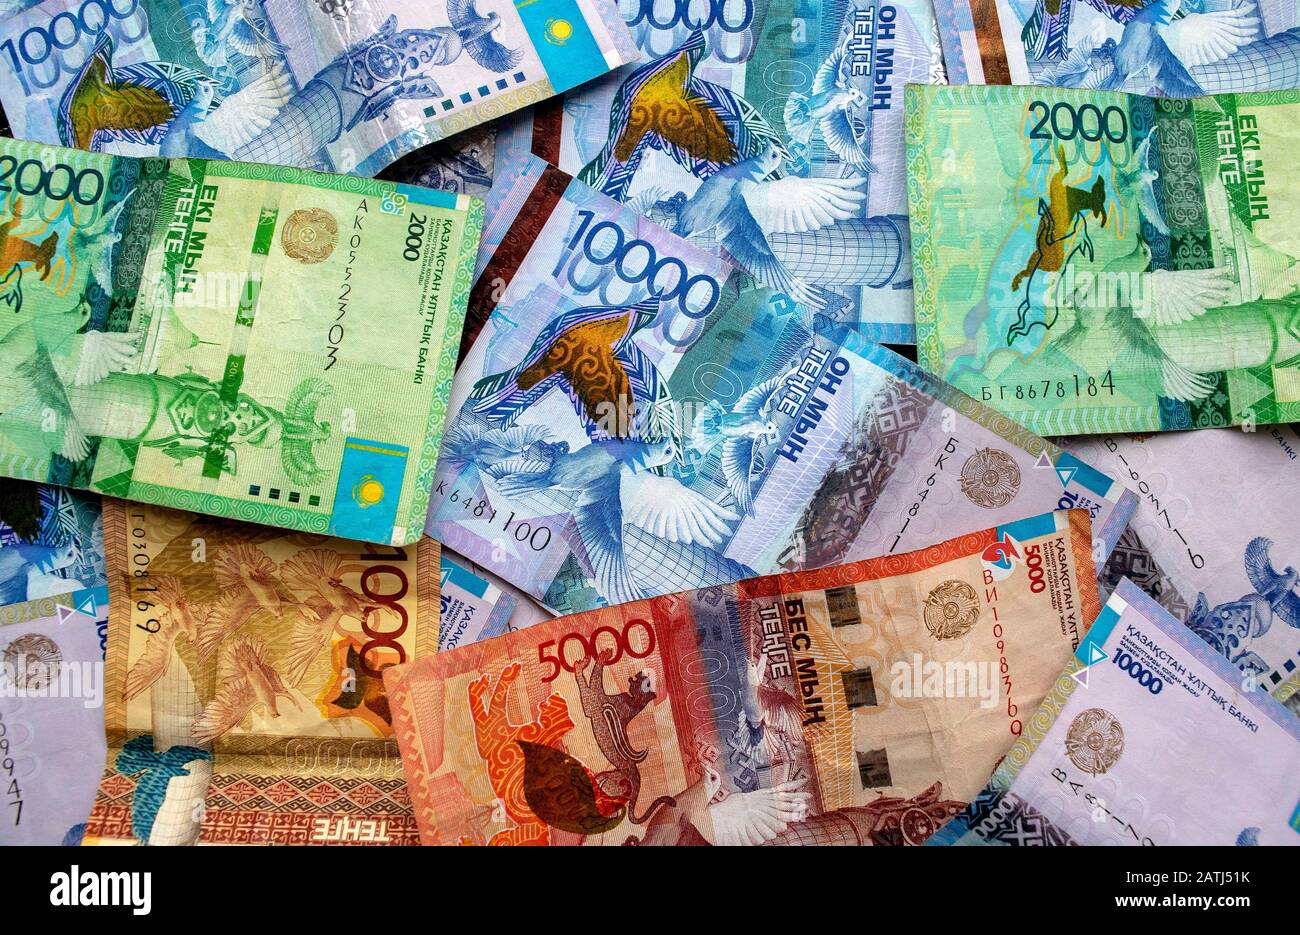 Monnaie nationale du Kazakhstan, vue de dessus des billets mixtes de tenge. Mille, deux mille, cinq mille, dix mille et cinq cents tenge. KZ pa Banque D'Images